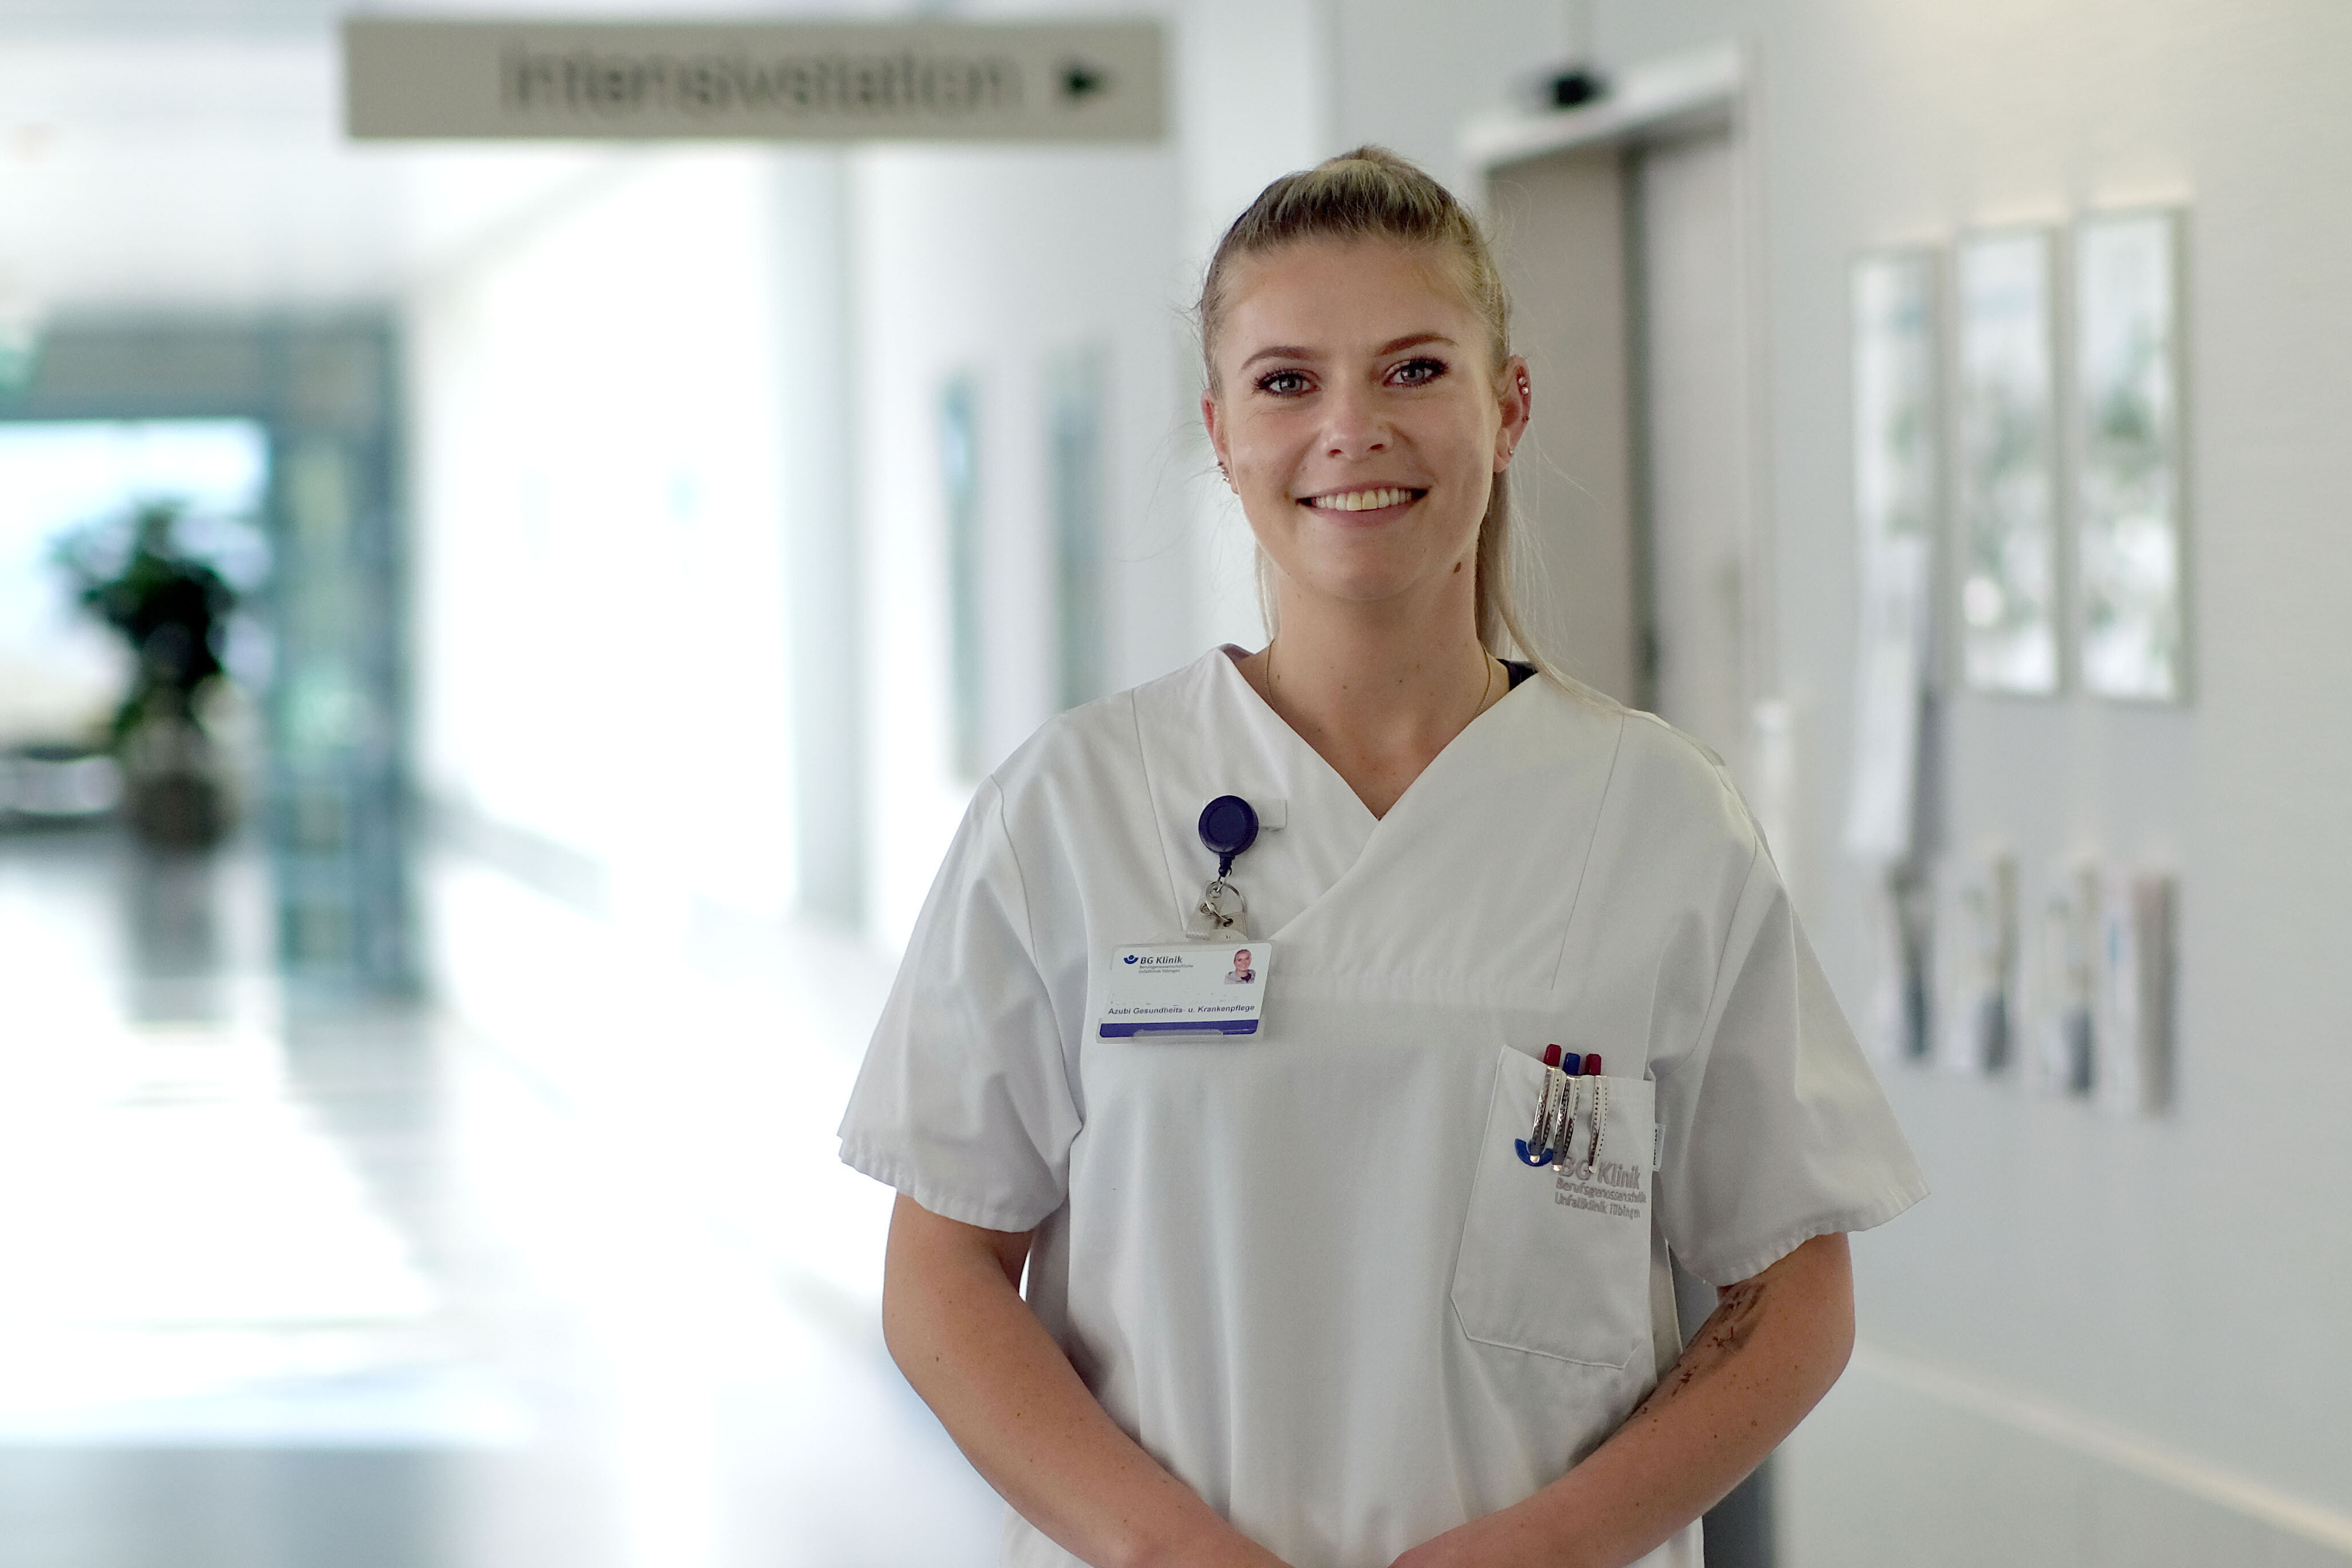 Milena Reinhardt absolviert eine Ausbildung zur Gesundheits- und Krankenpflegerin in der BG Klinik Tübingen. Die 24-Jährige schätzt die gute Anleitung in den Praxisphasen.